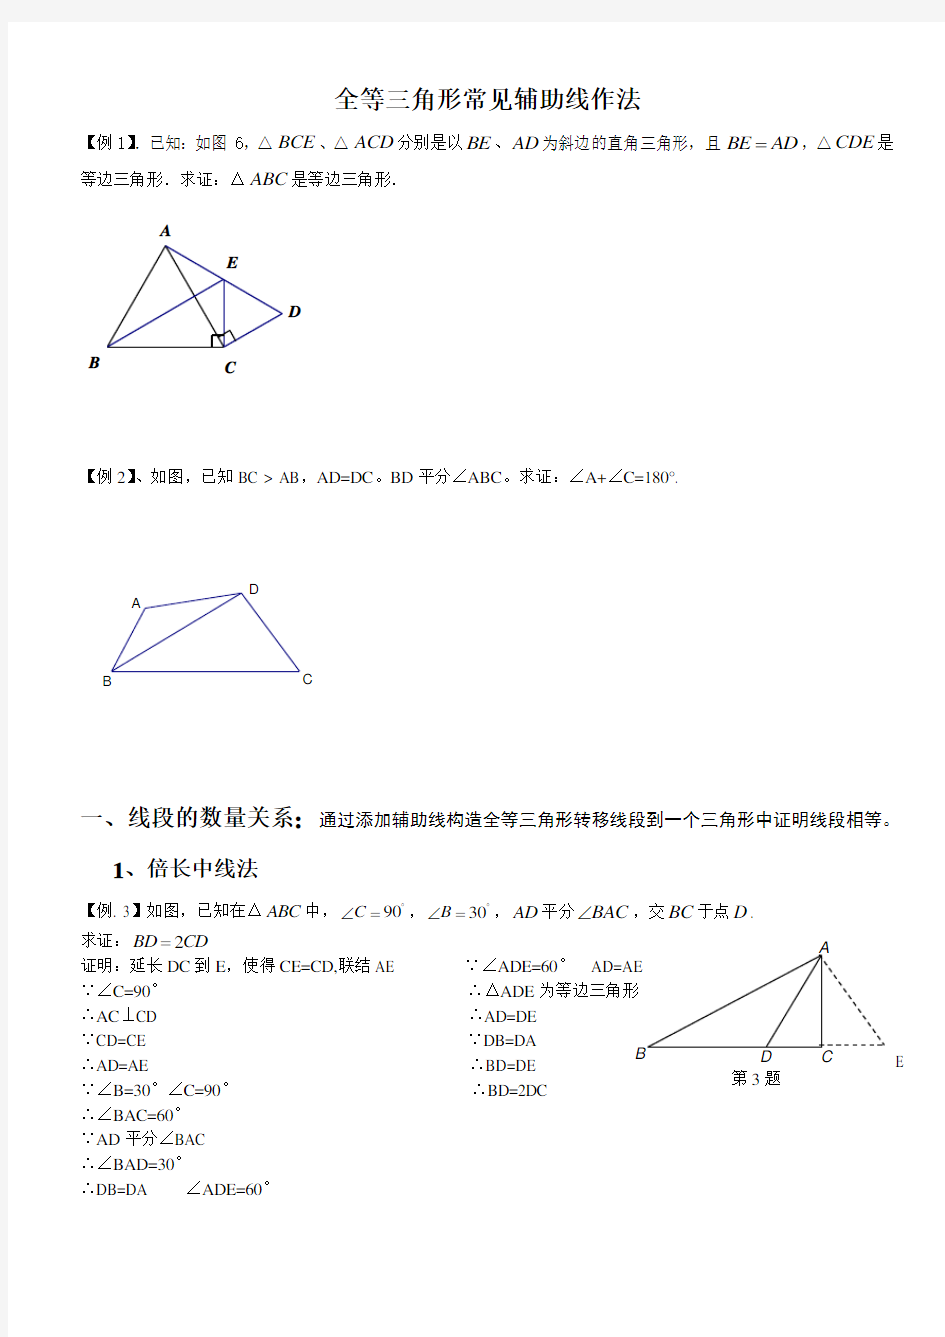 全等三角形经典题型辅助线答案